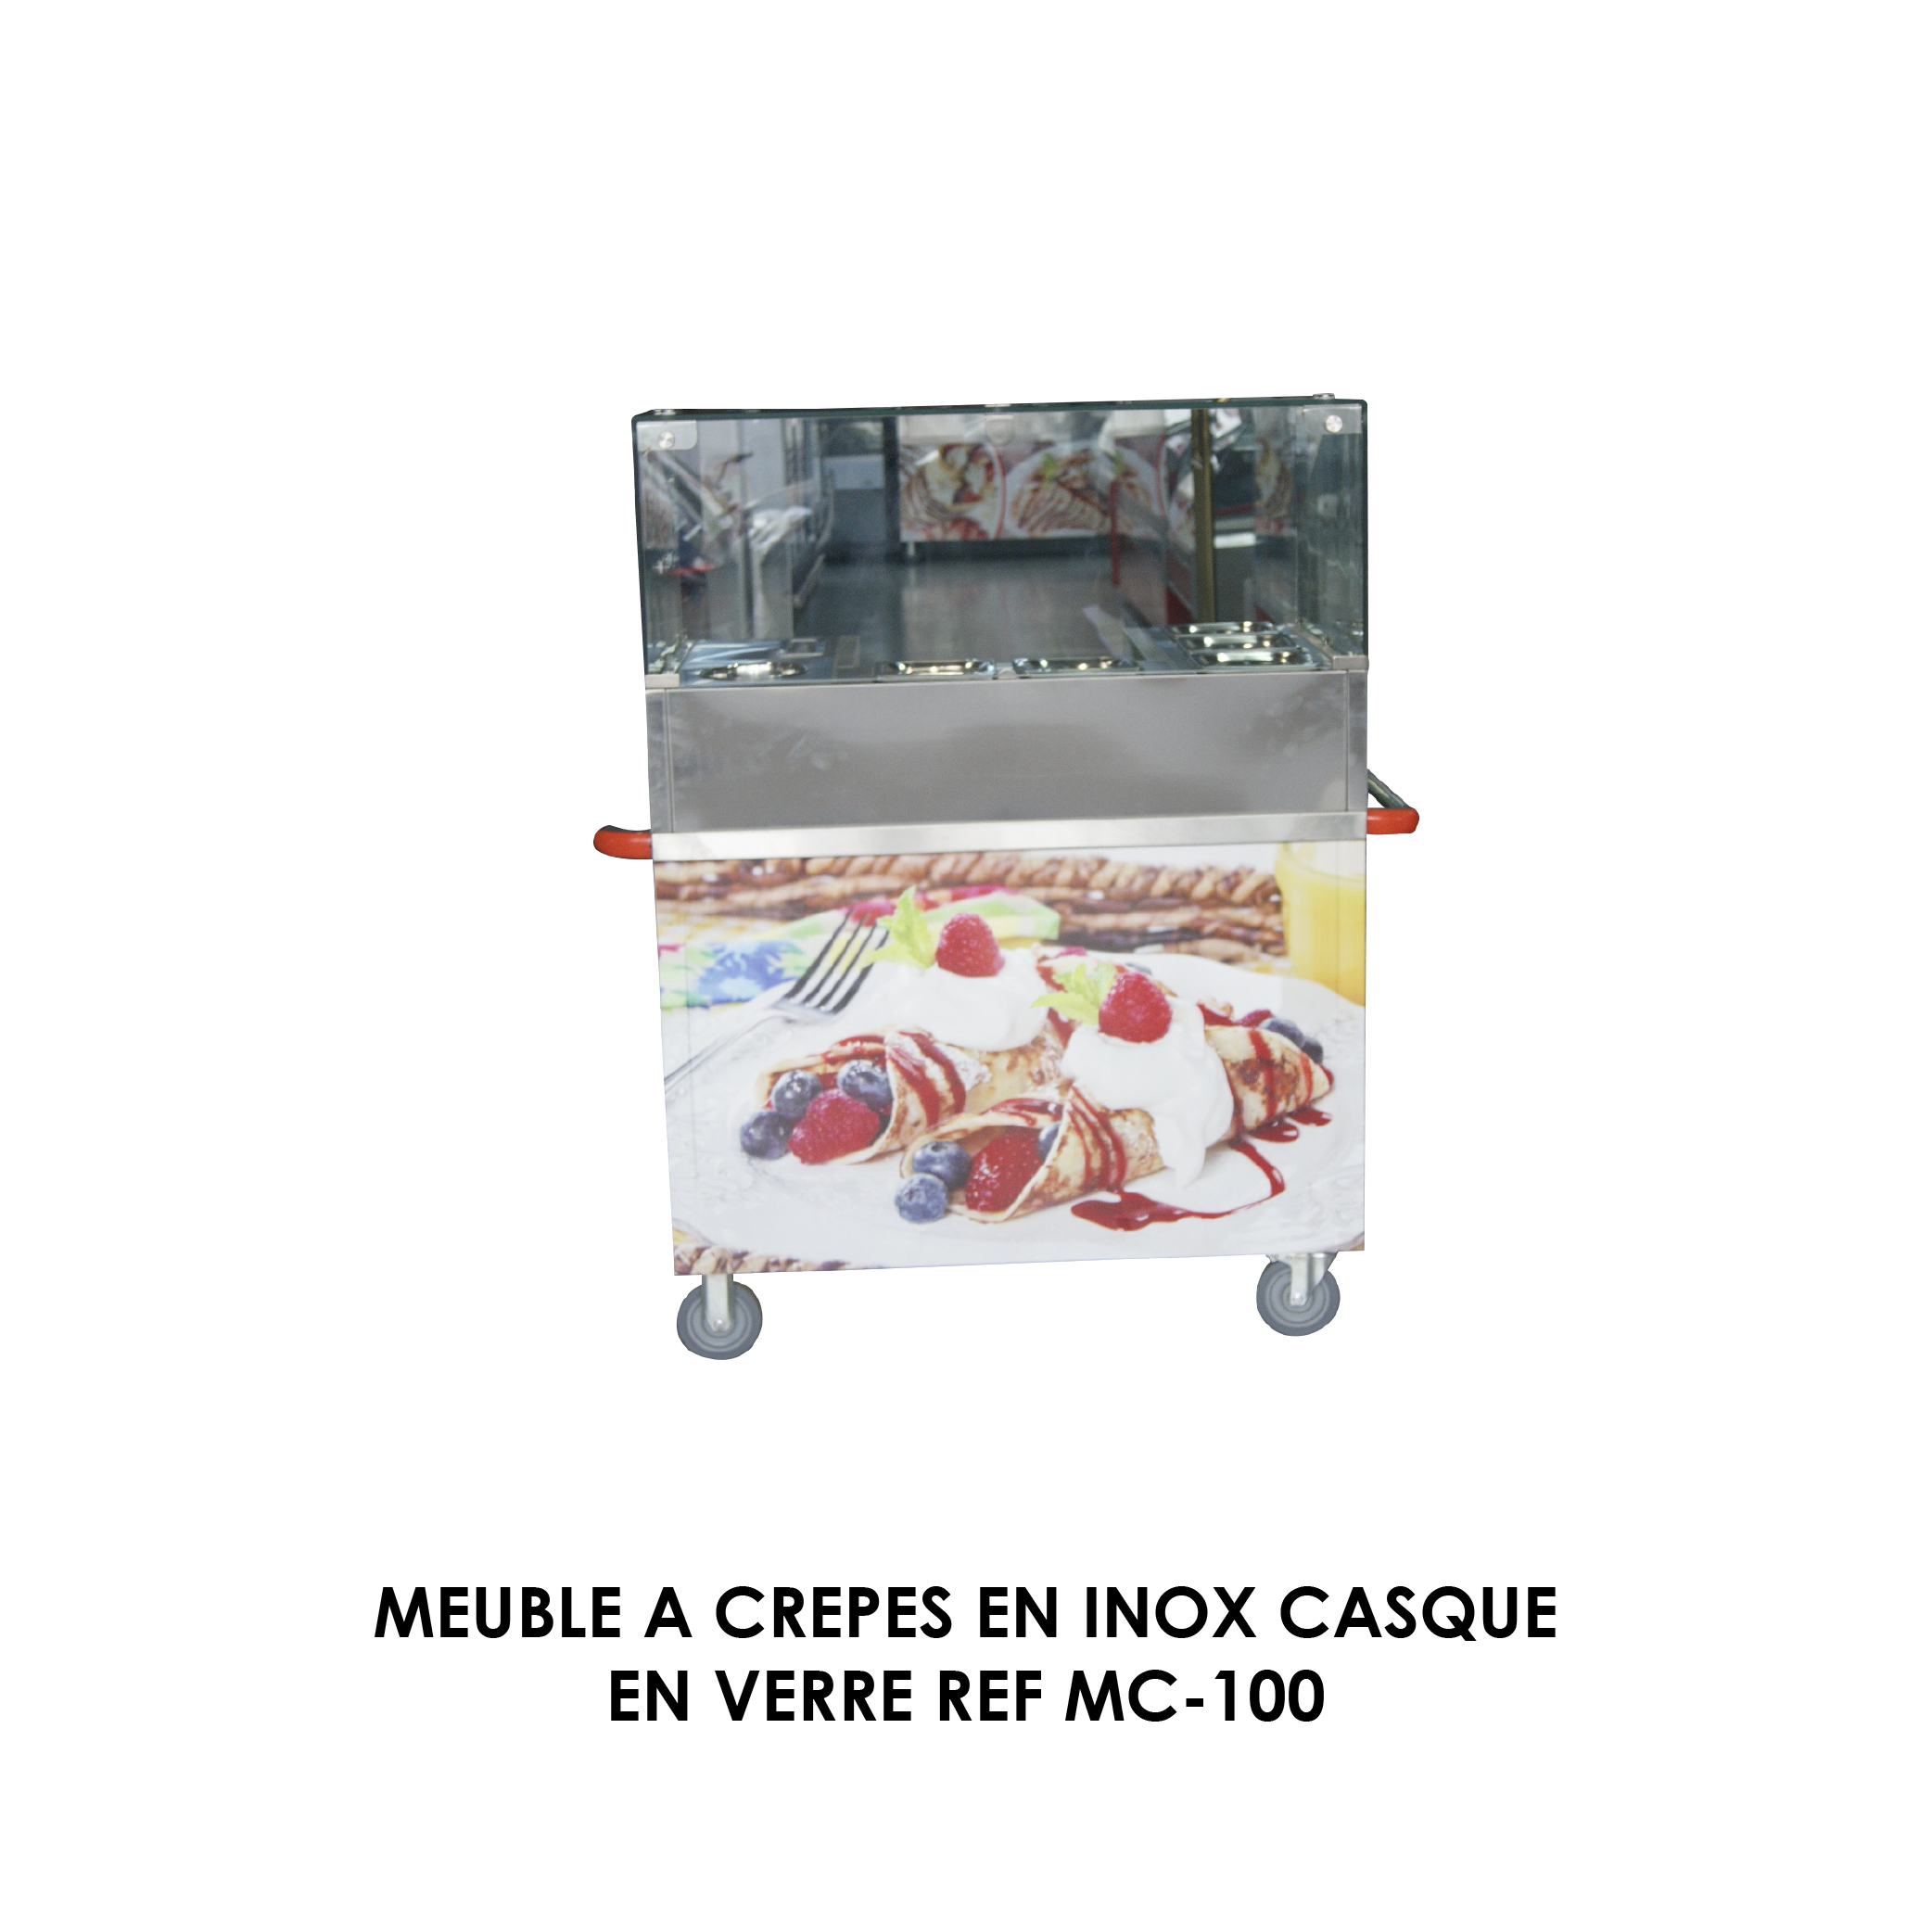 MEUBLE A CREPES EN INOX CASQUE EN VERRE REF MC-100